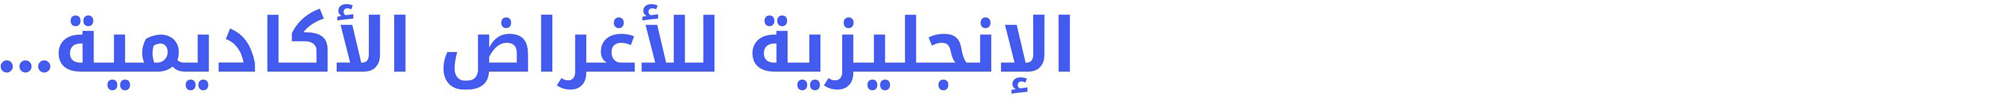 eap-in-arabic